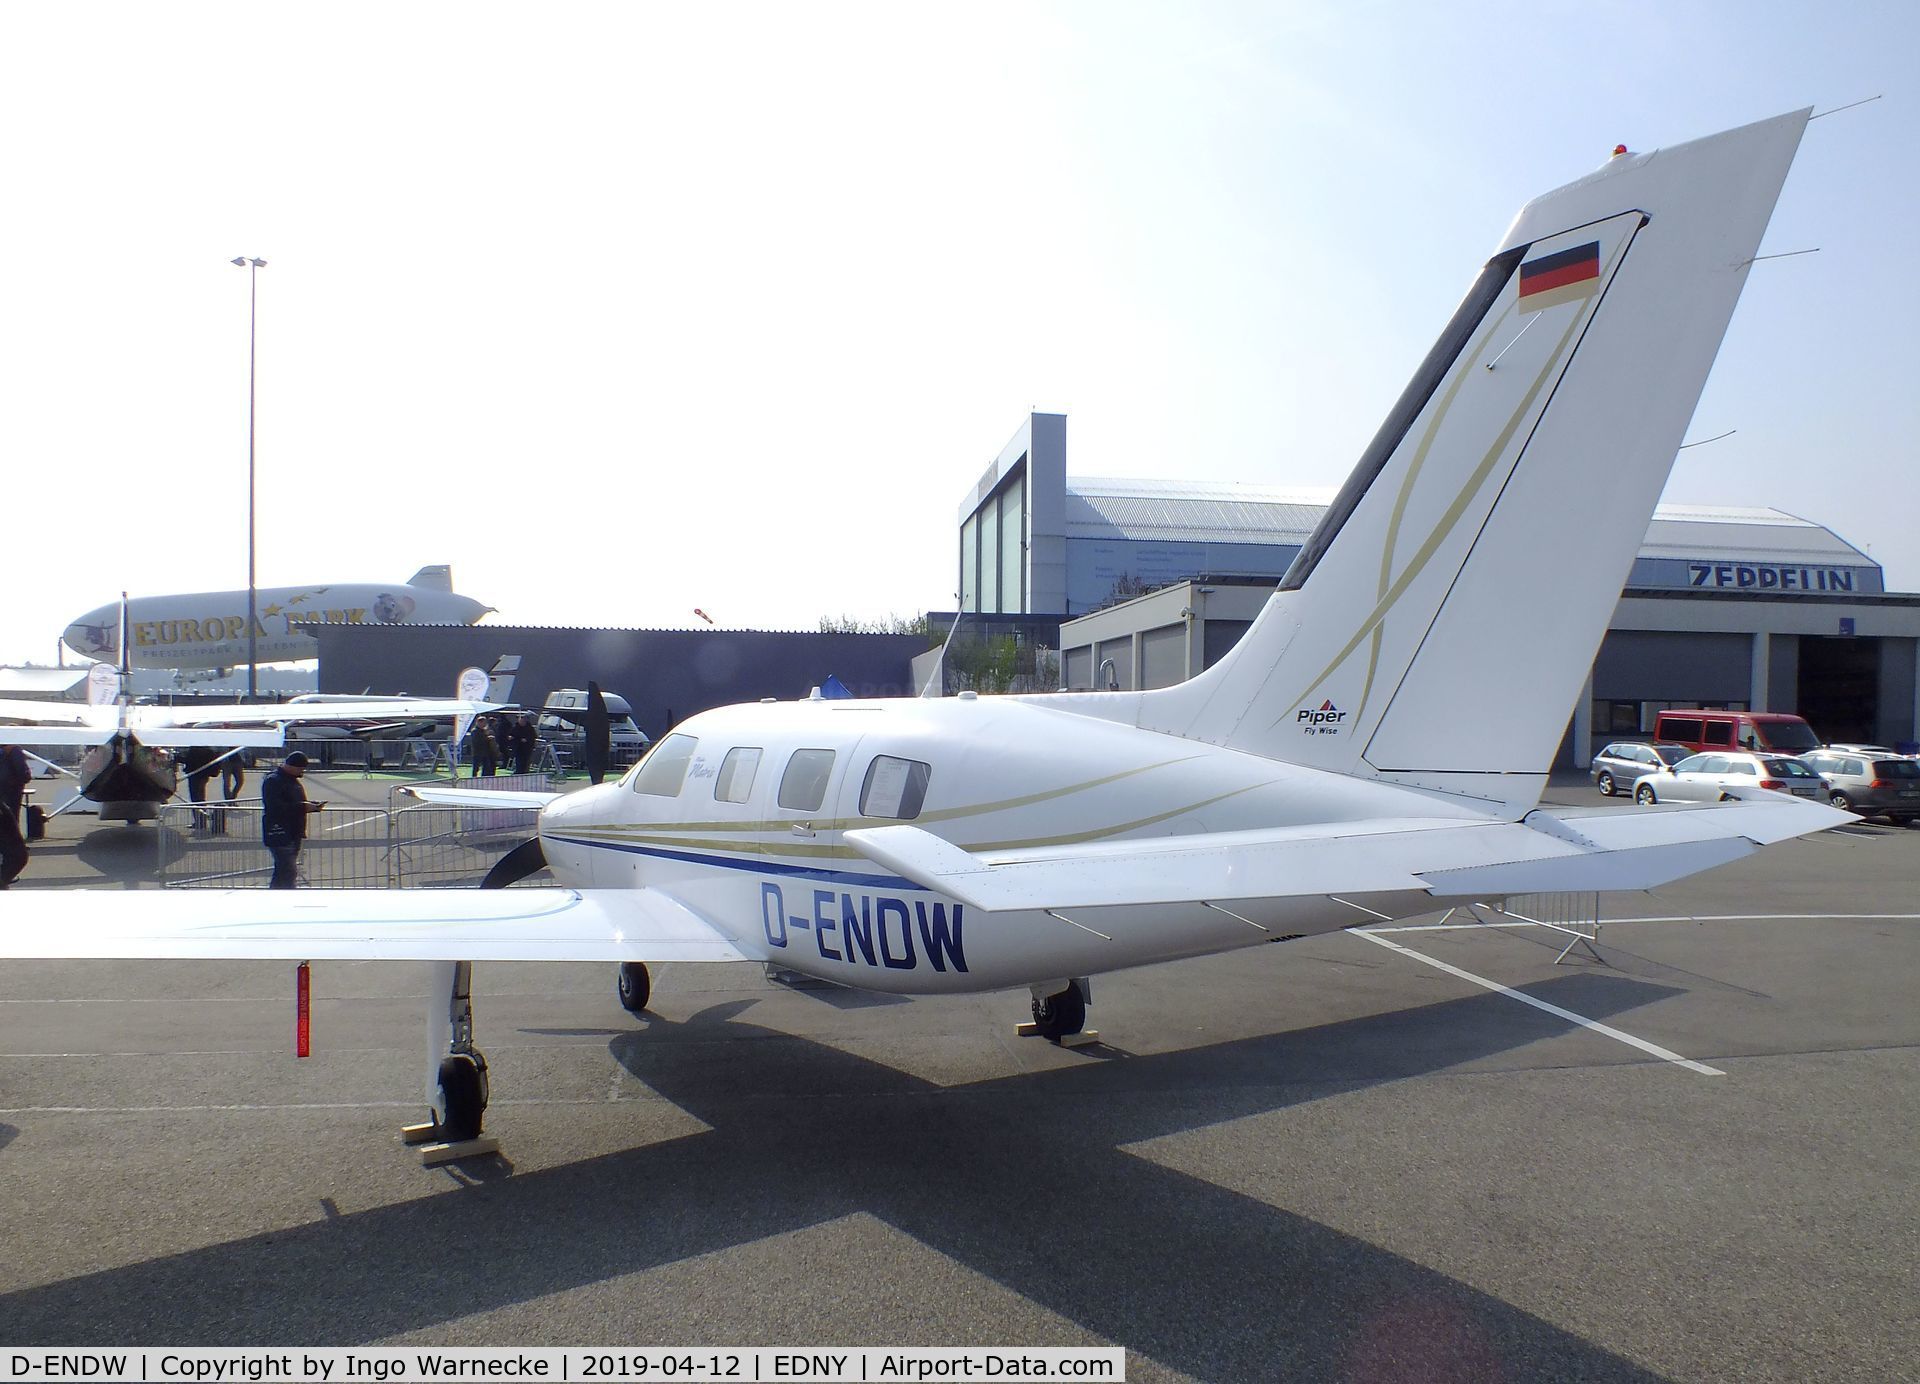 D-ENDW, Piper PA-46R-350T Malibu Matrix C/N 4692125, Piper PA-46R-350T Malibu Matrix at the AERO 2019, Friedrichshafen